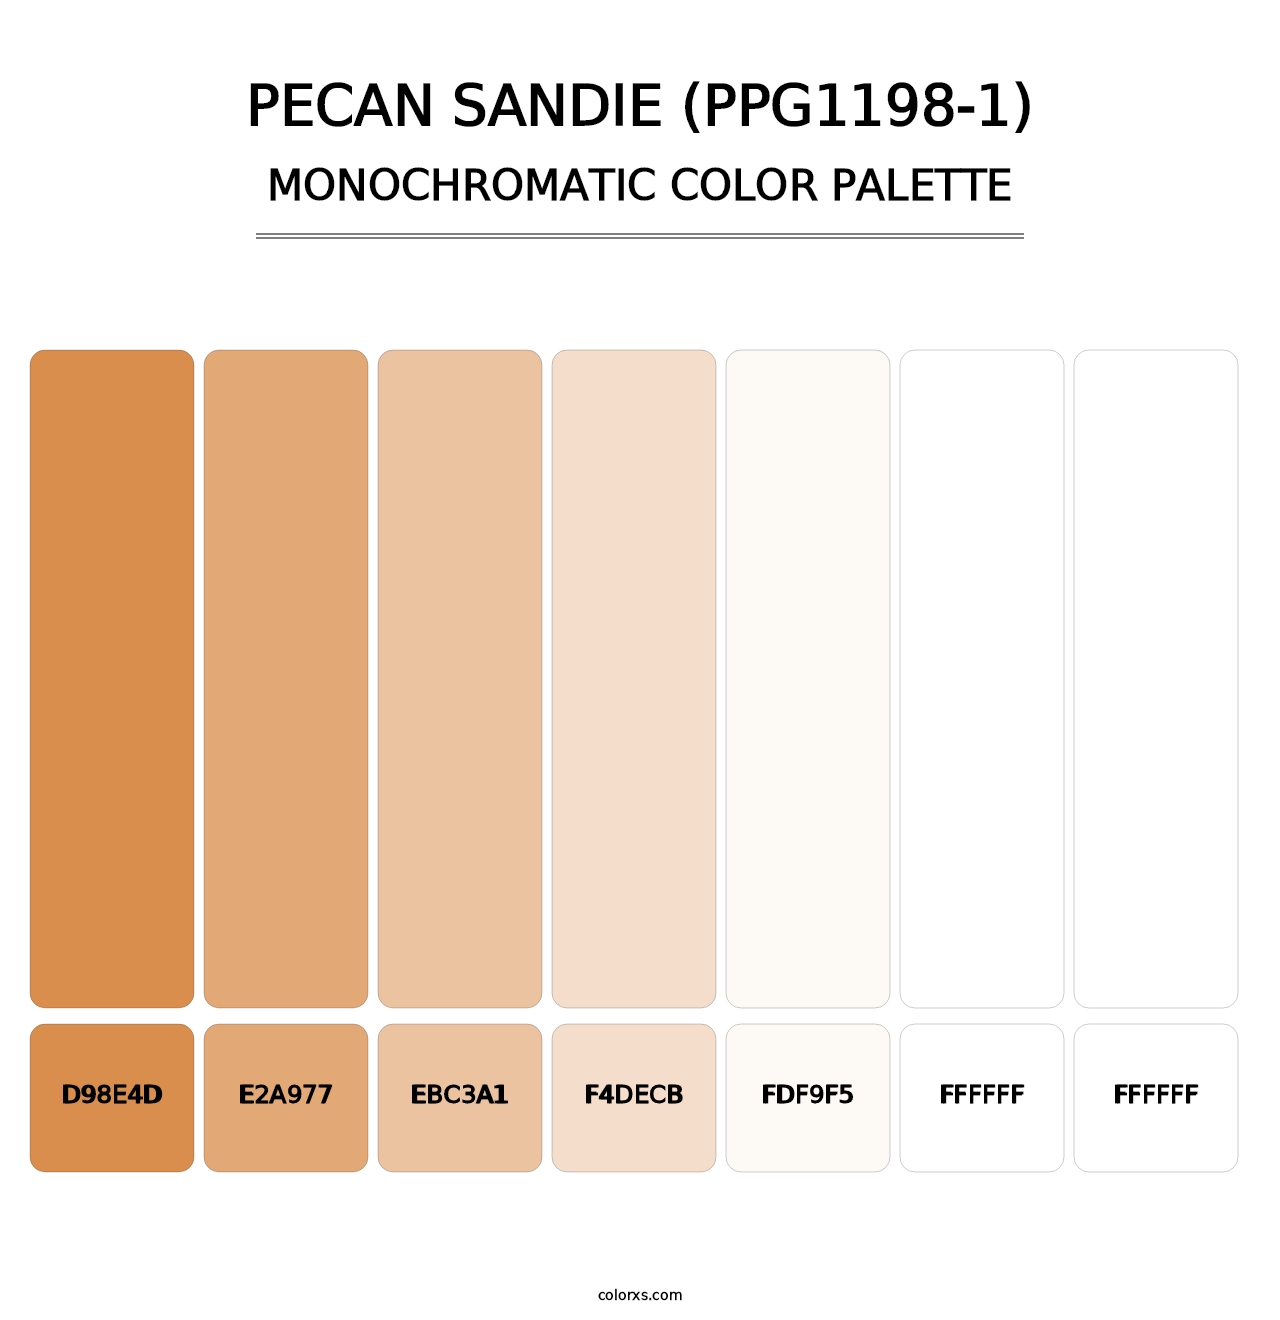 Pecan Sandie (PPG1198-1) - Monochromatic Color Palette